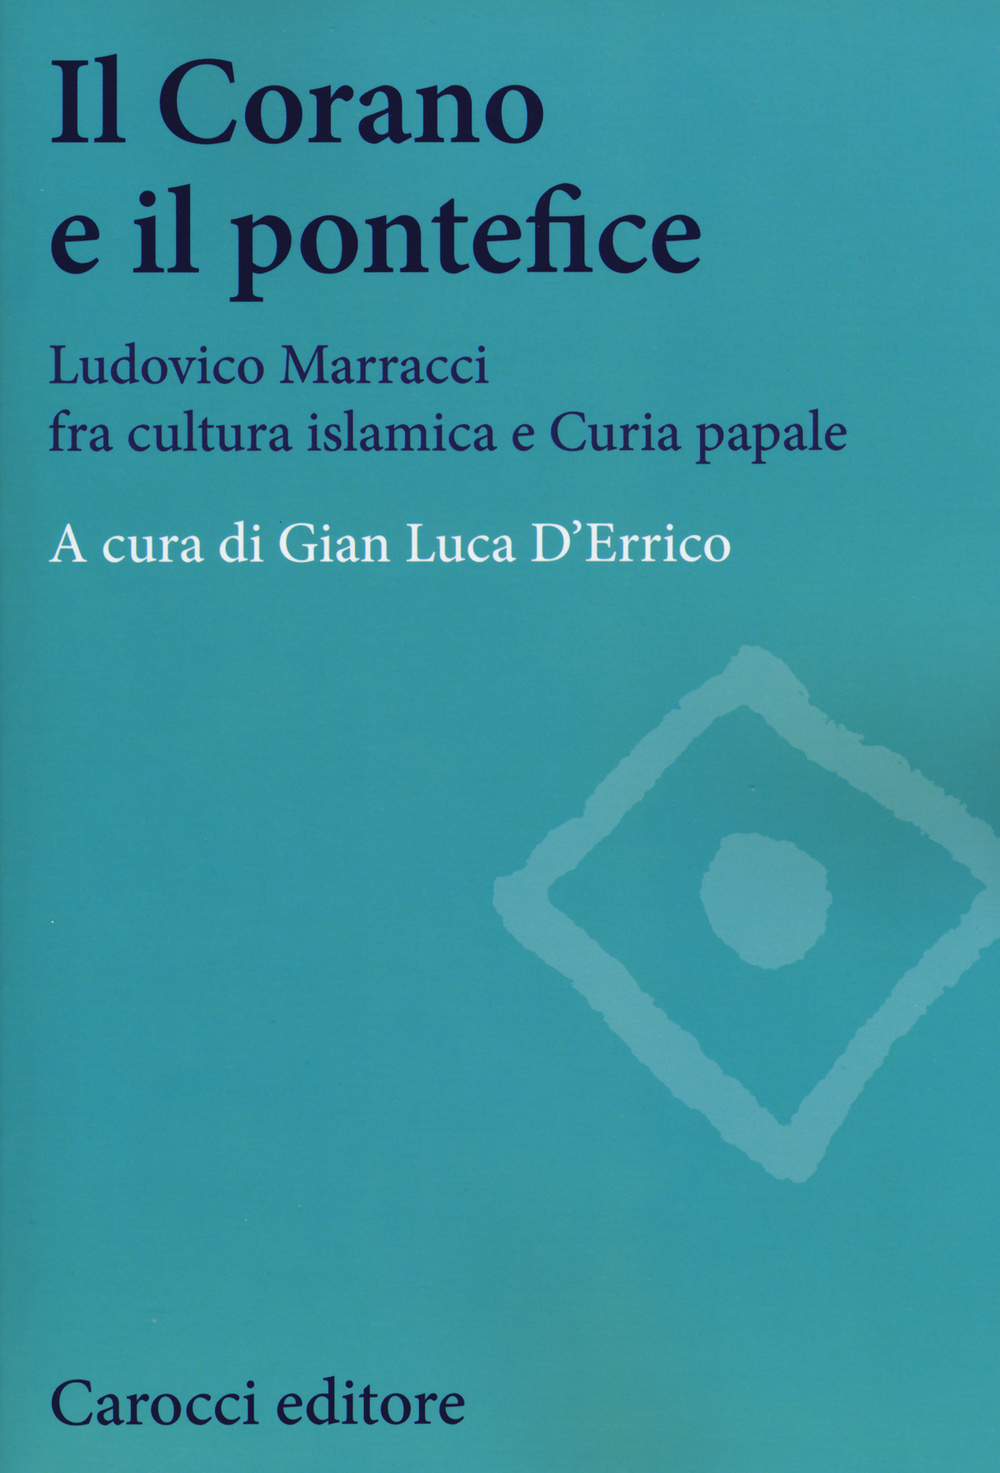 Image of Il Corano e il pontefice. Ludovico Marracci fra cultura islamica e curia papale